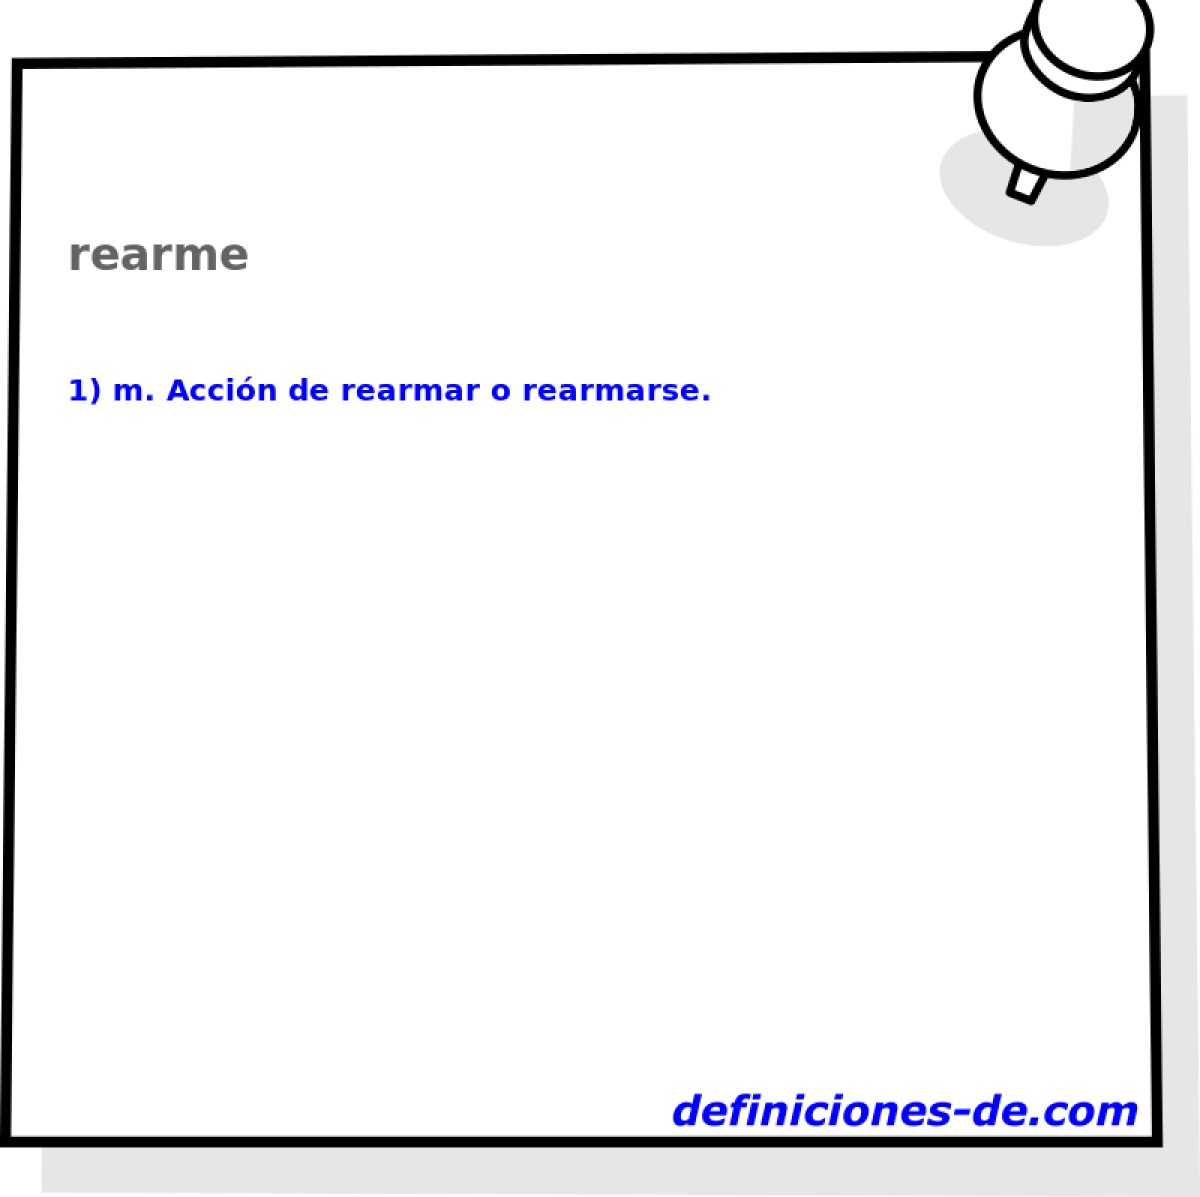 rearme 